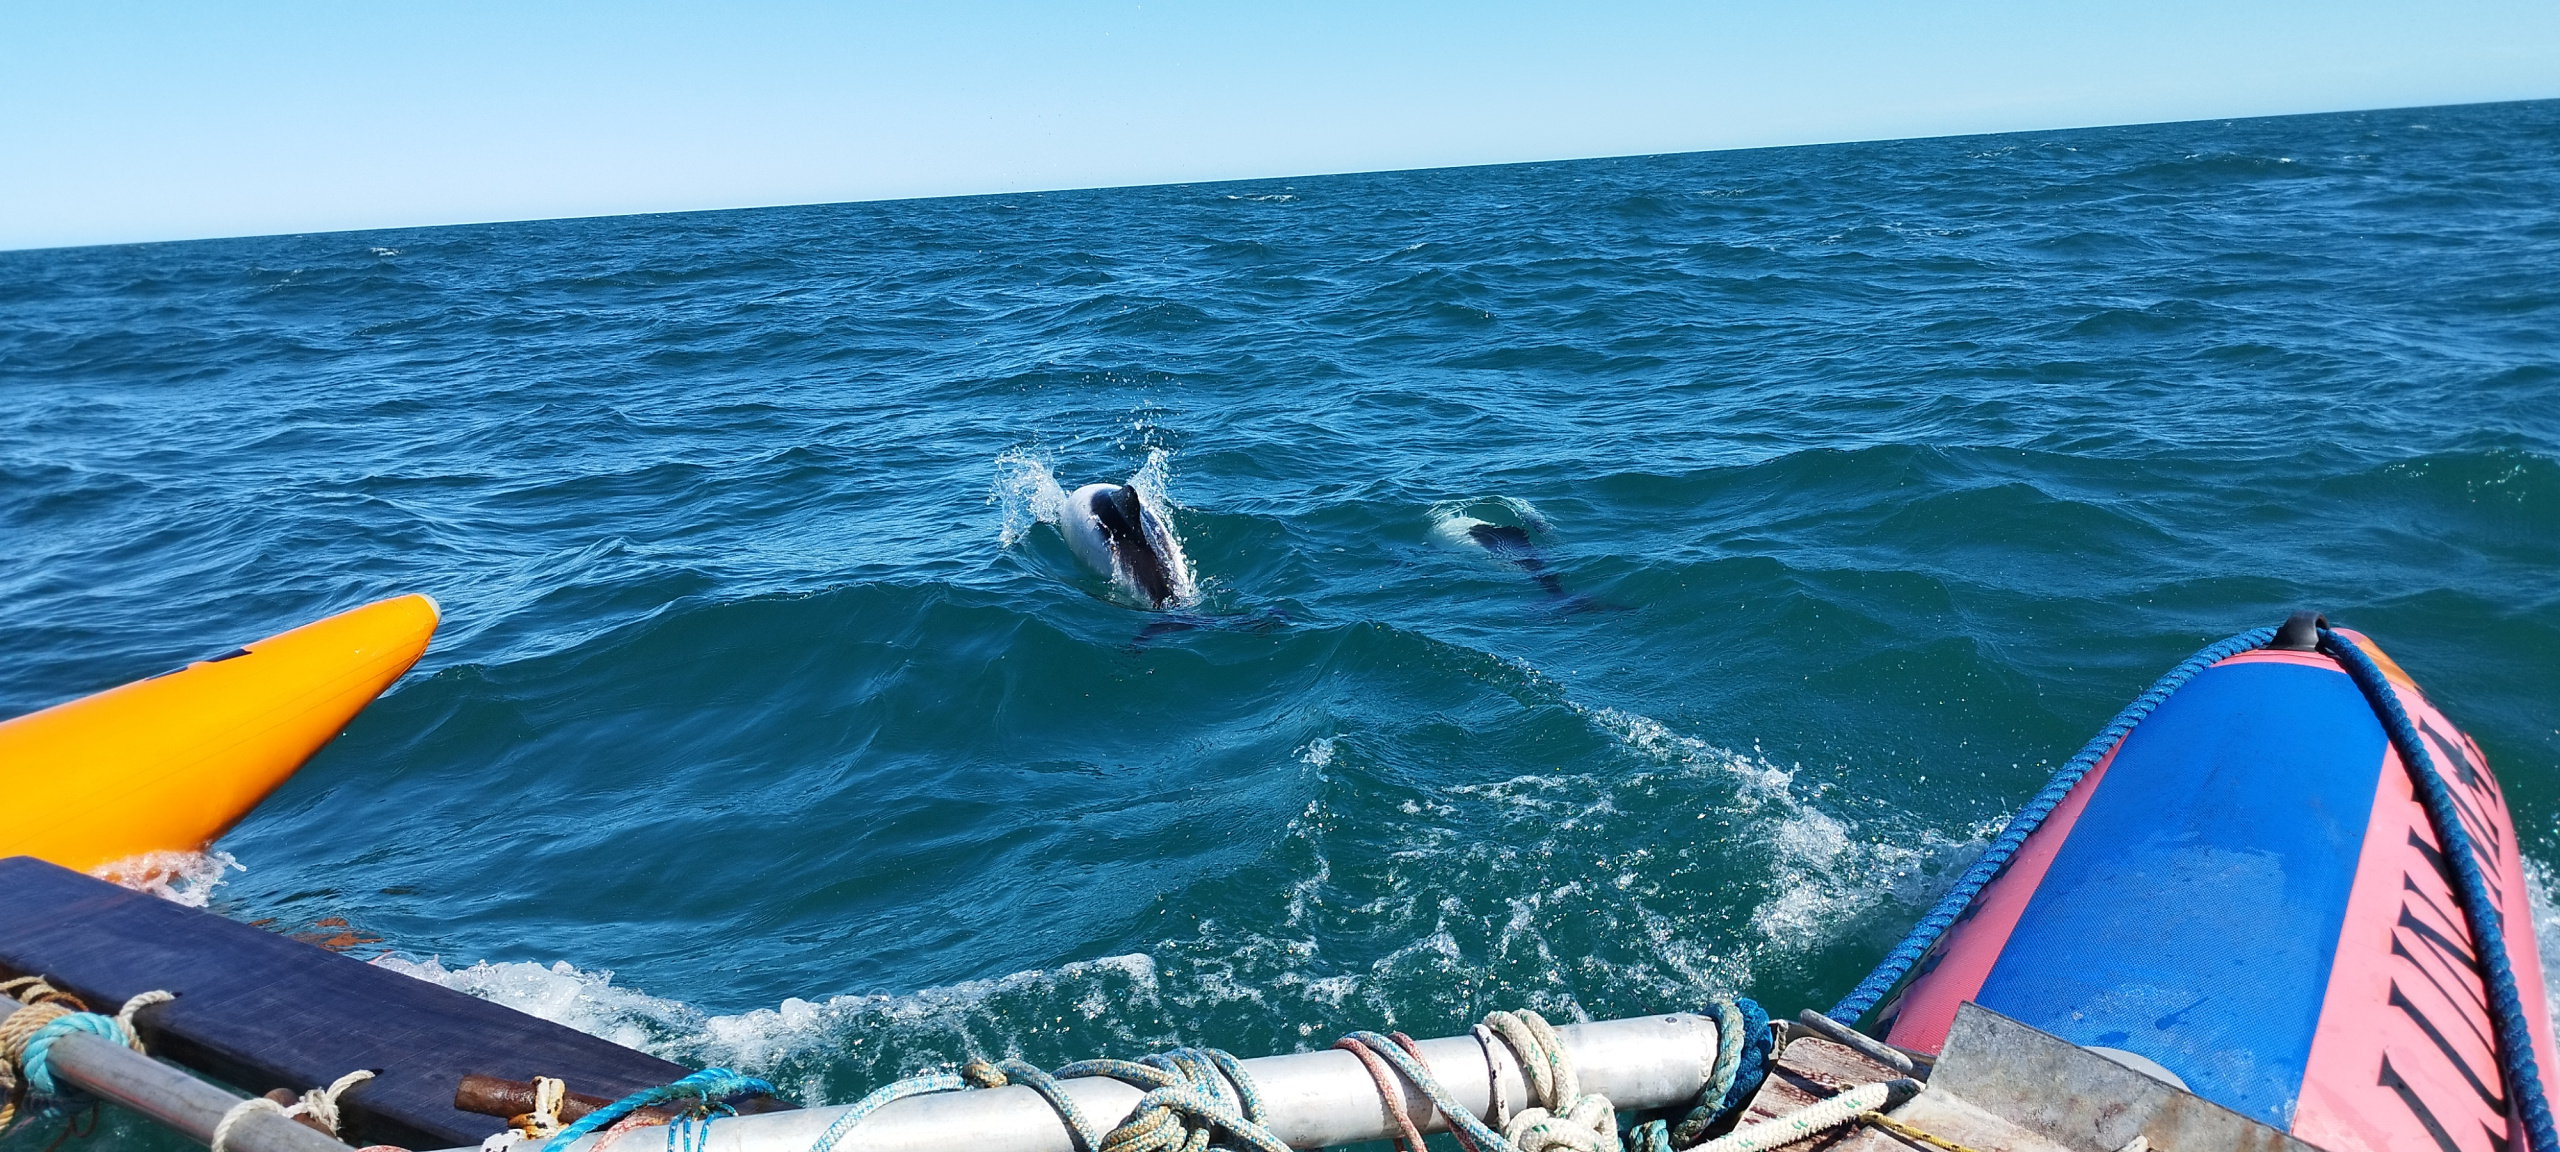 Дельфины сопровождают тримаран. Фото участников кругосветной экспедиции РГО